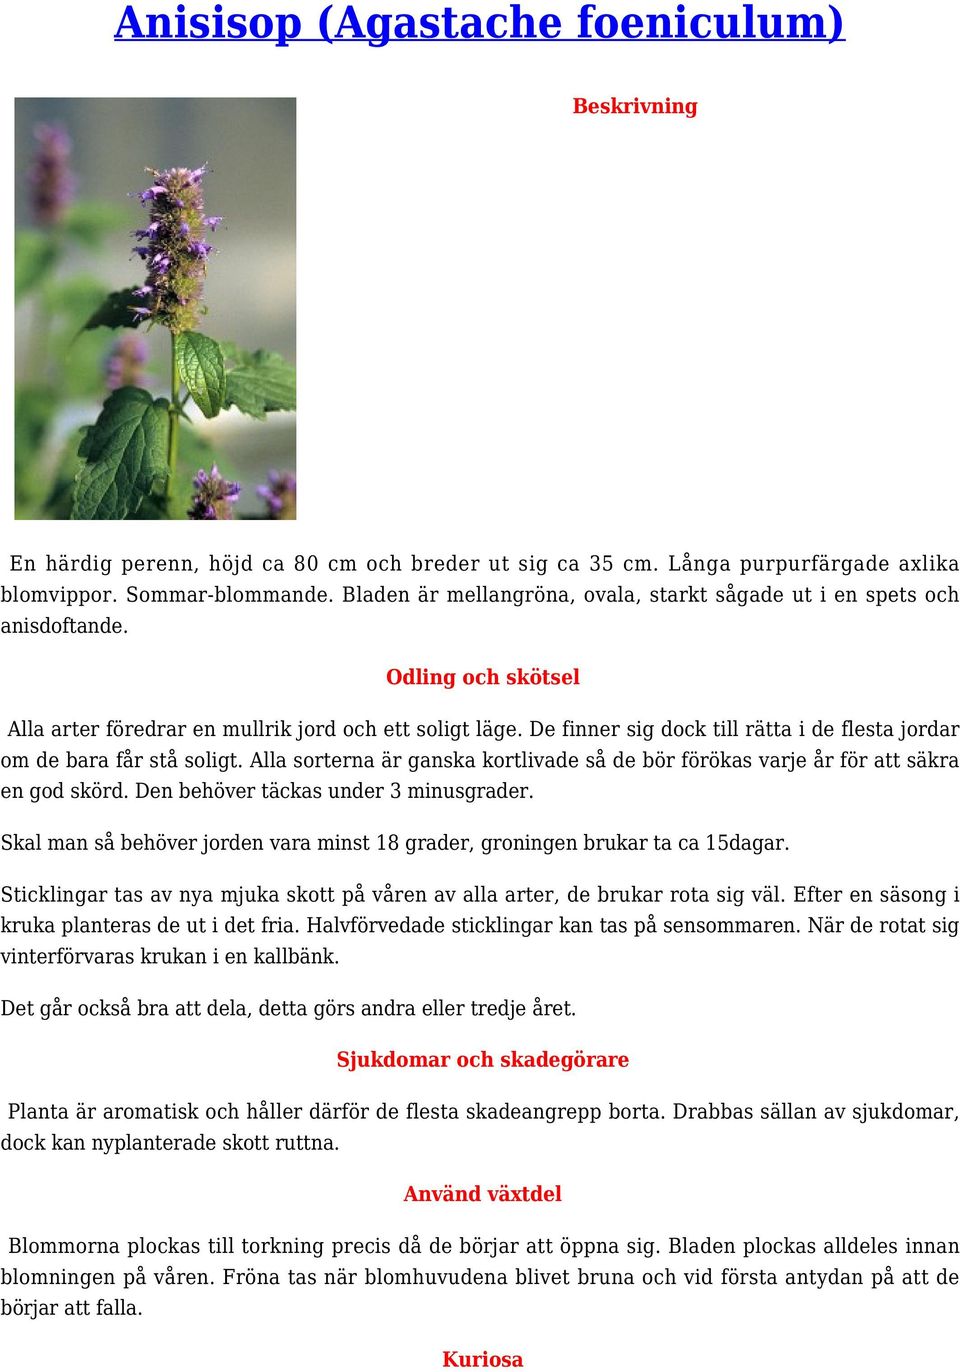 Anisisop (Agastache foeniculum) - PDF Gratis nedladdning